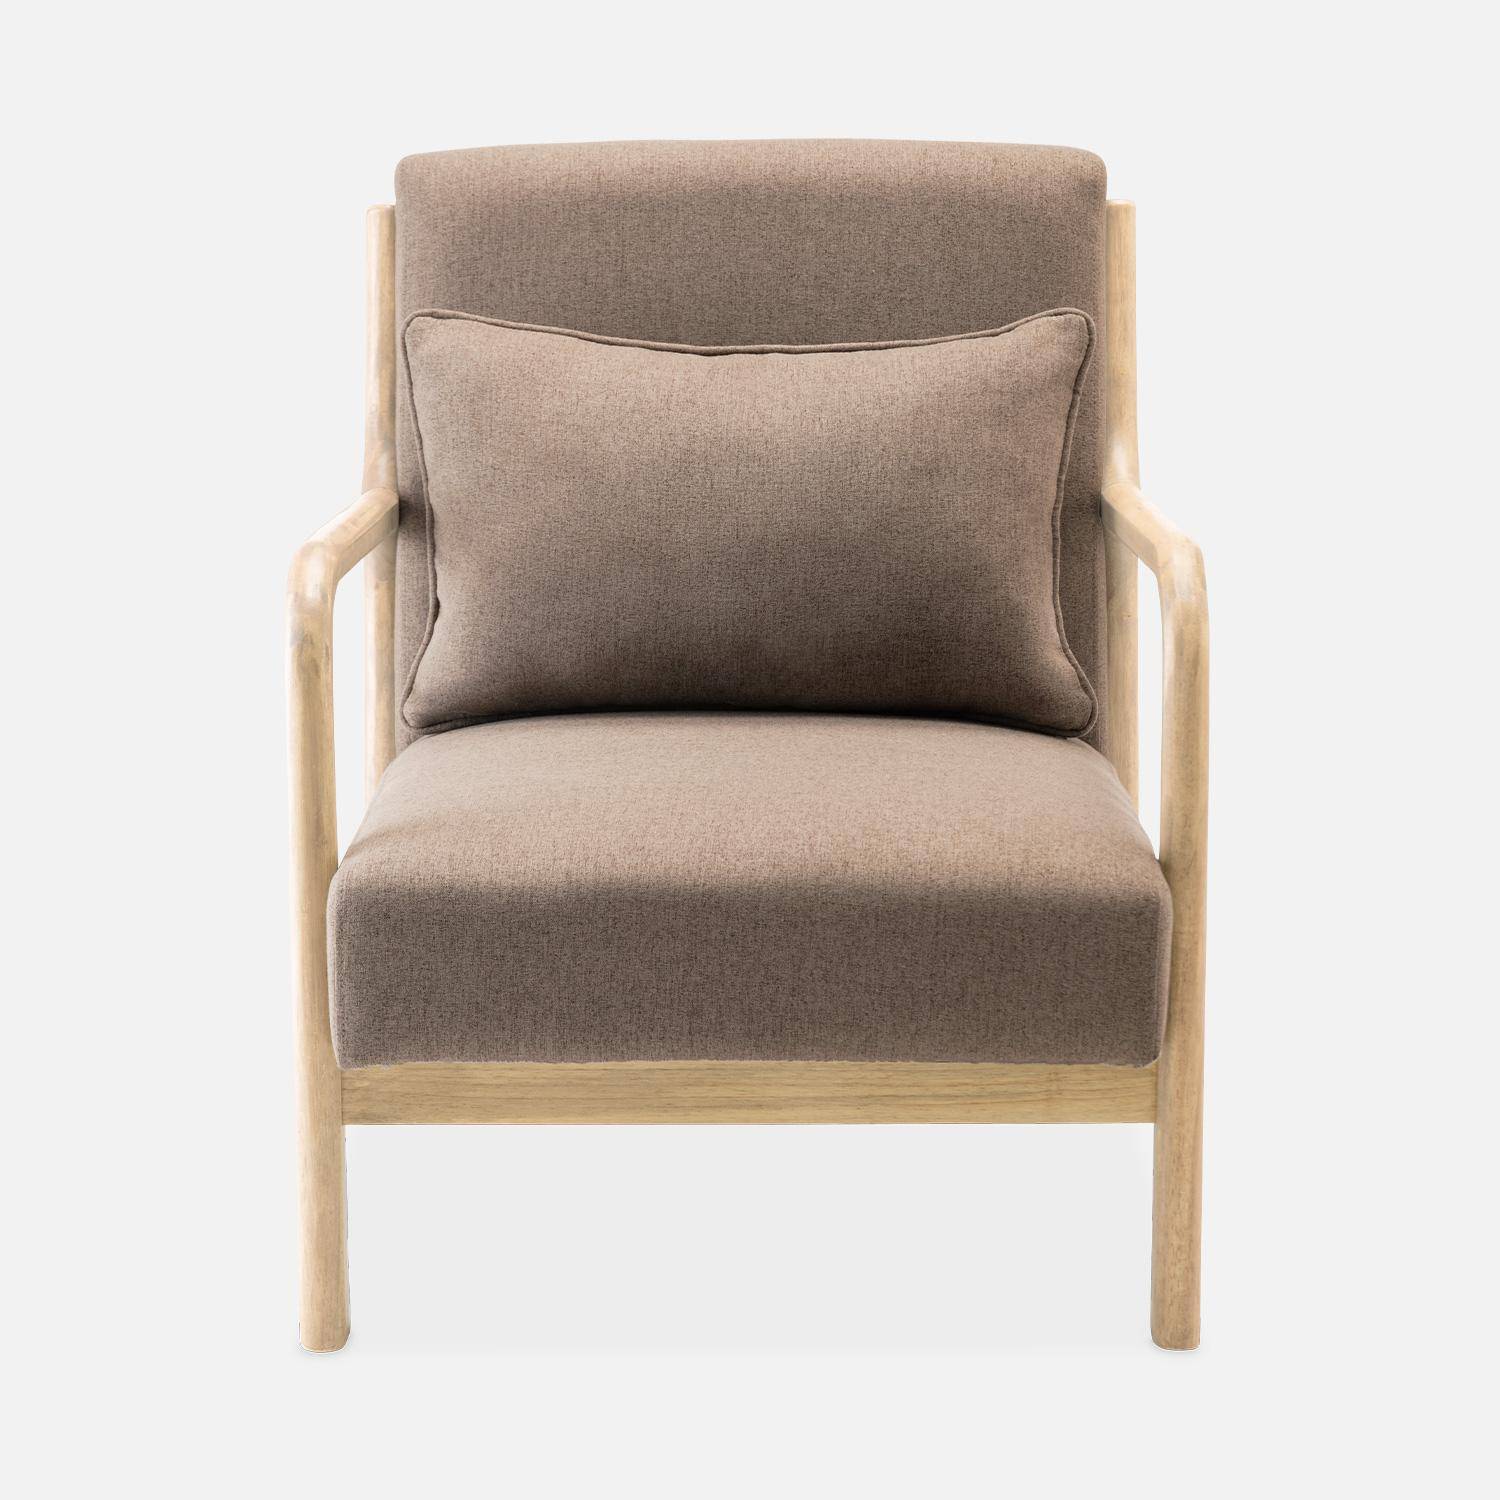 Sillón de diseño marrón en madera y tela, 1 asiento recto fijo, patas de compás escandinavas, armazón de madera maciza, asiento cómodo Photo5